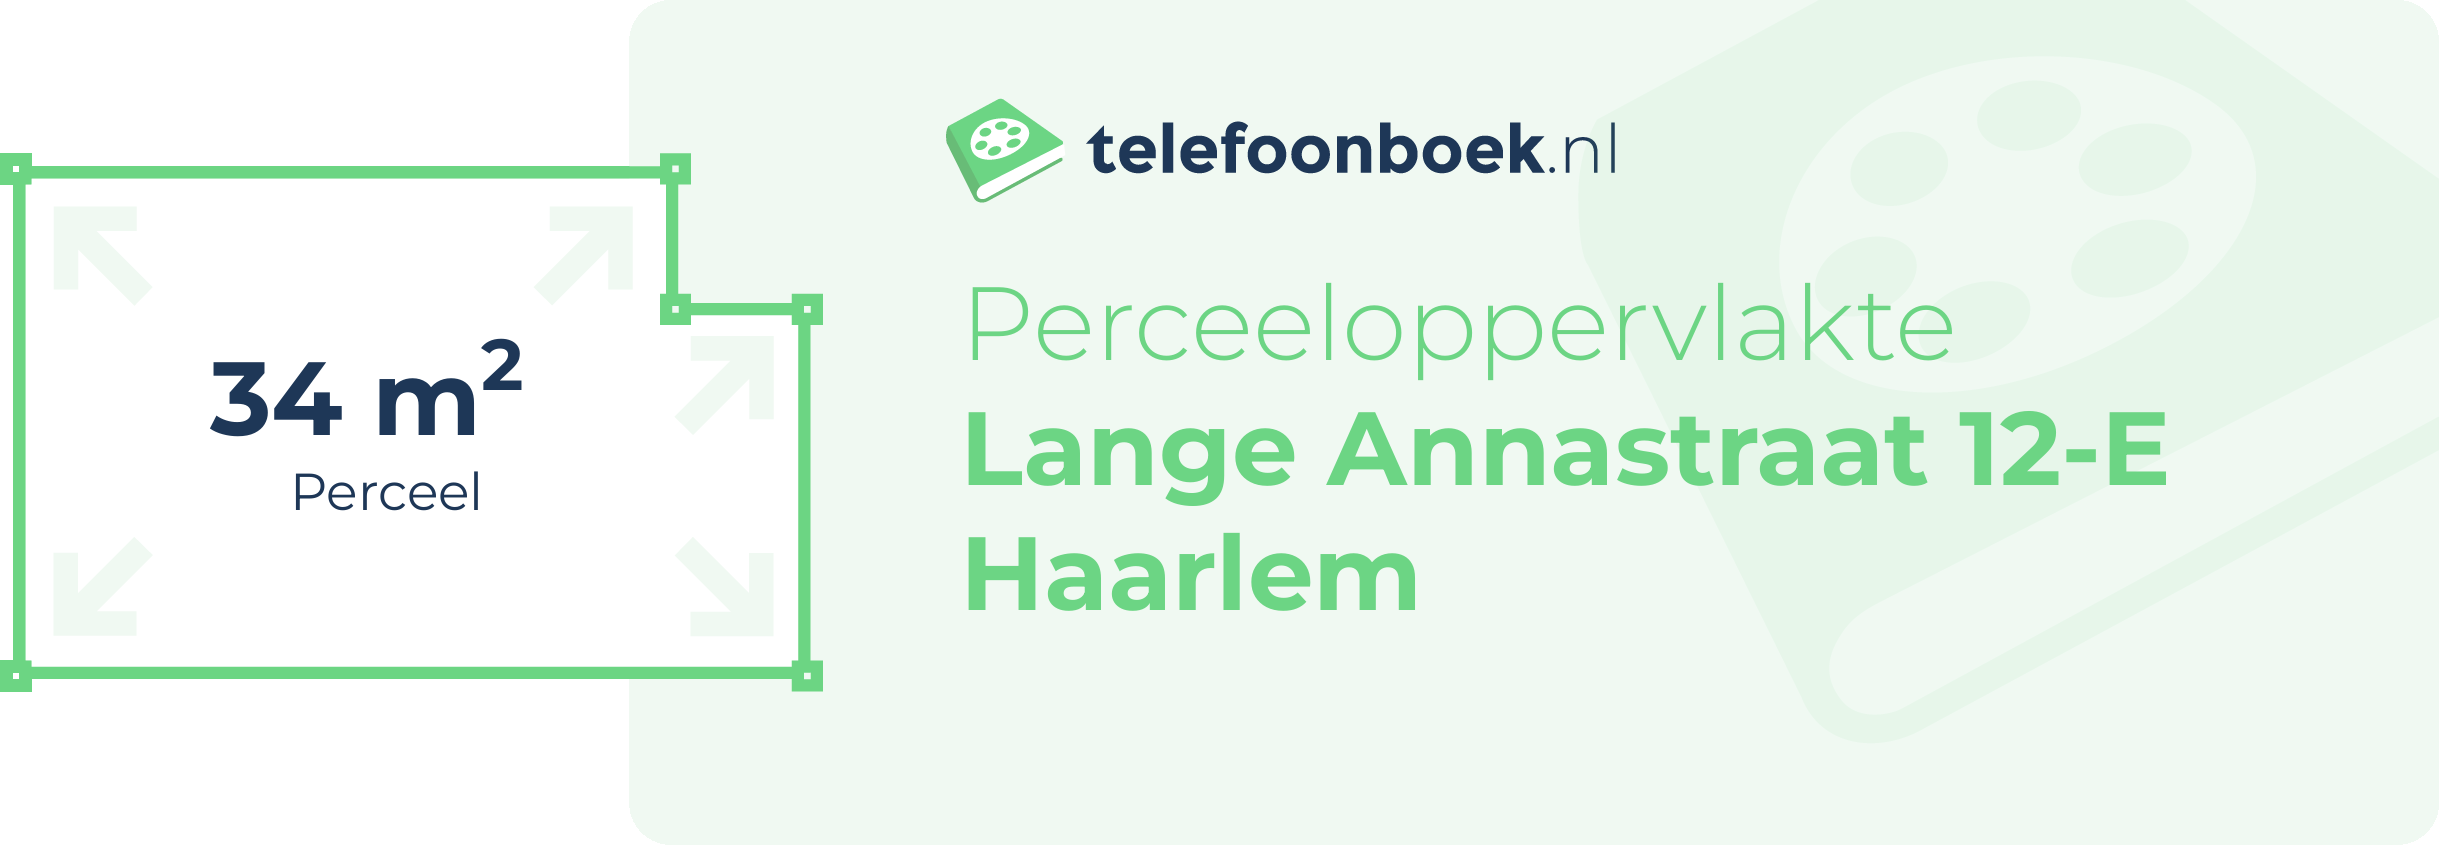 Perceeloppervlakte Lange Annastraat 12-E Haarlem